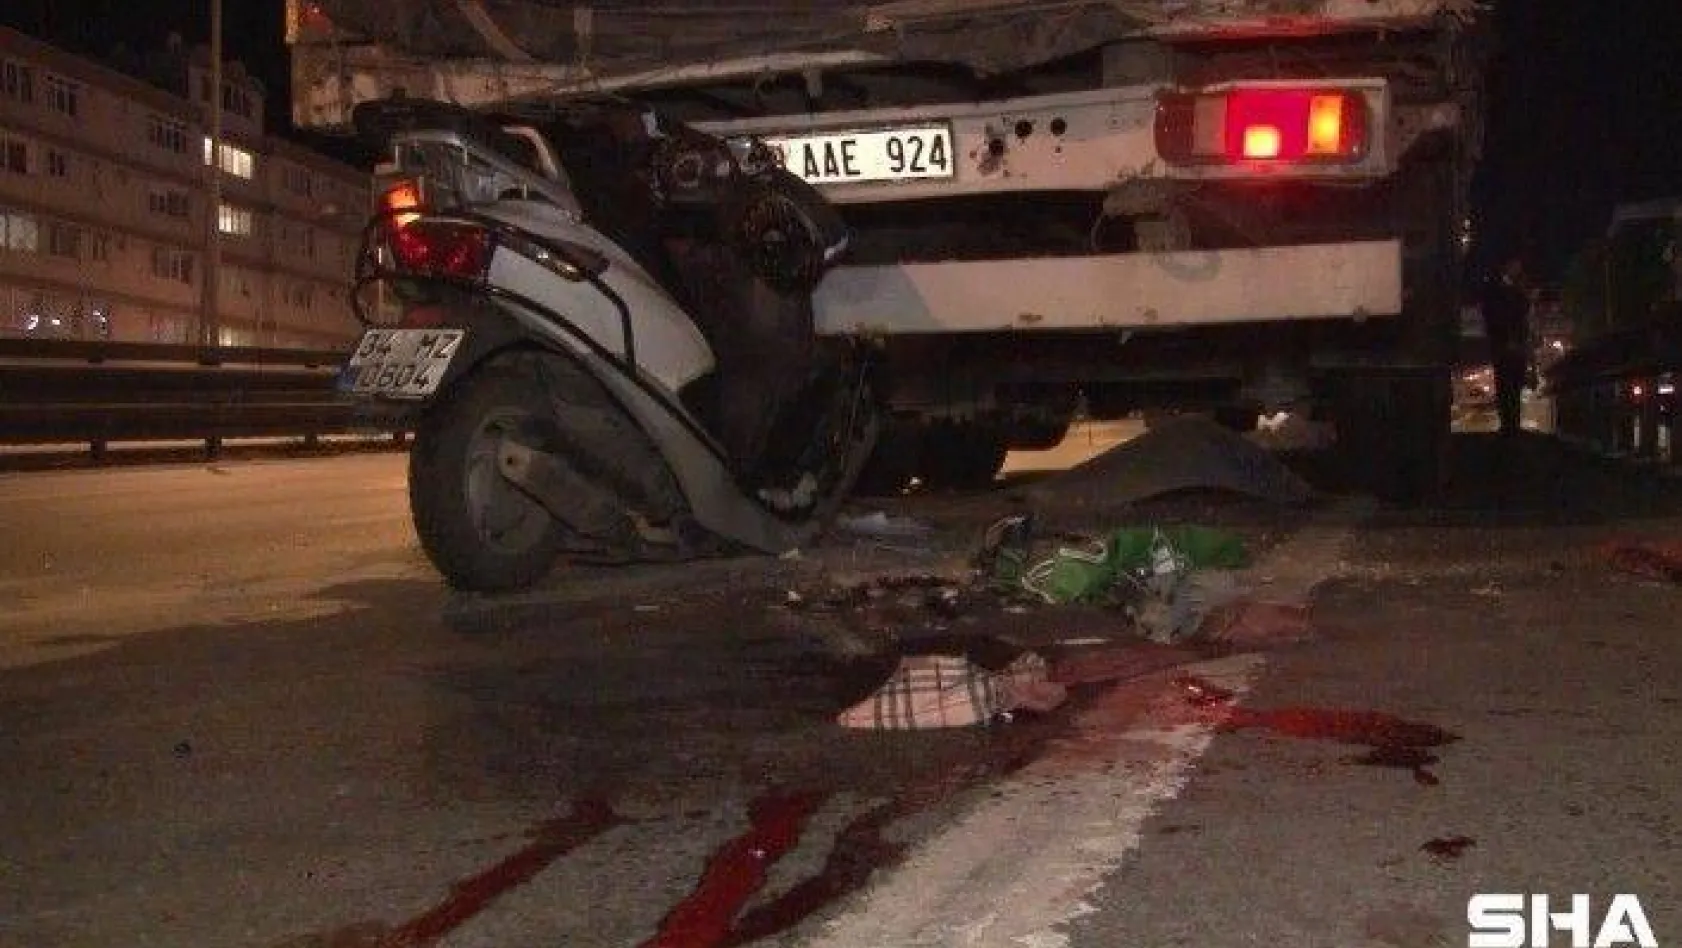 Avcılar'da feci kaza...Motosiklet tıra arkadan çarptı:1 ölü 1 yaralı